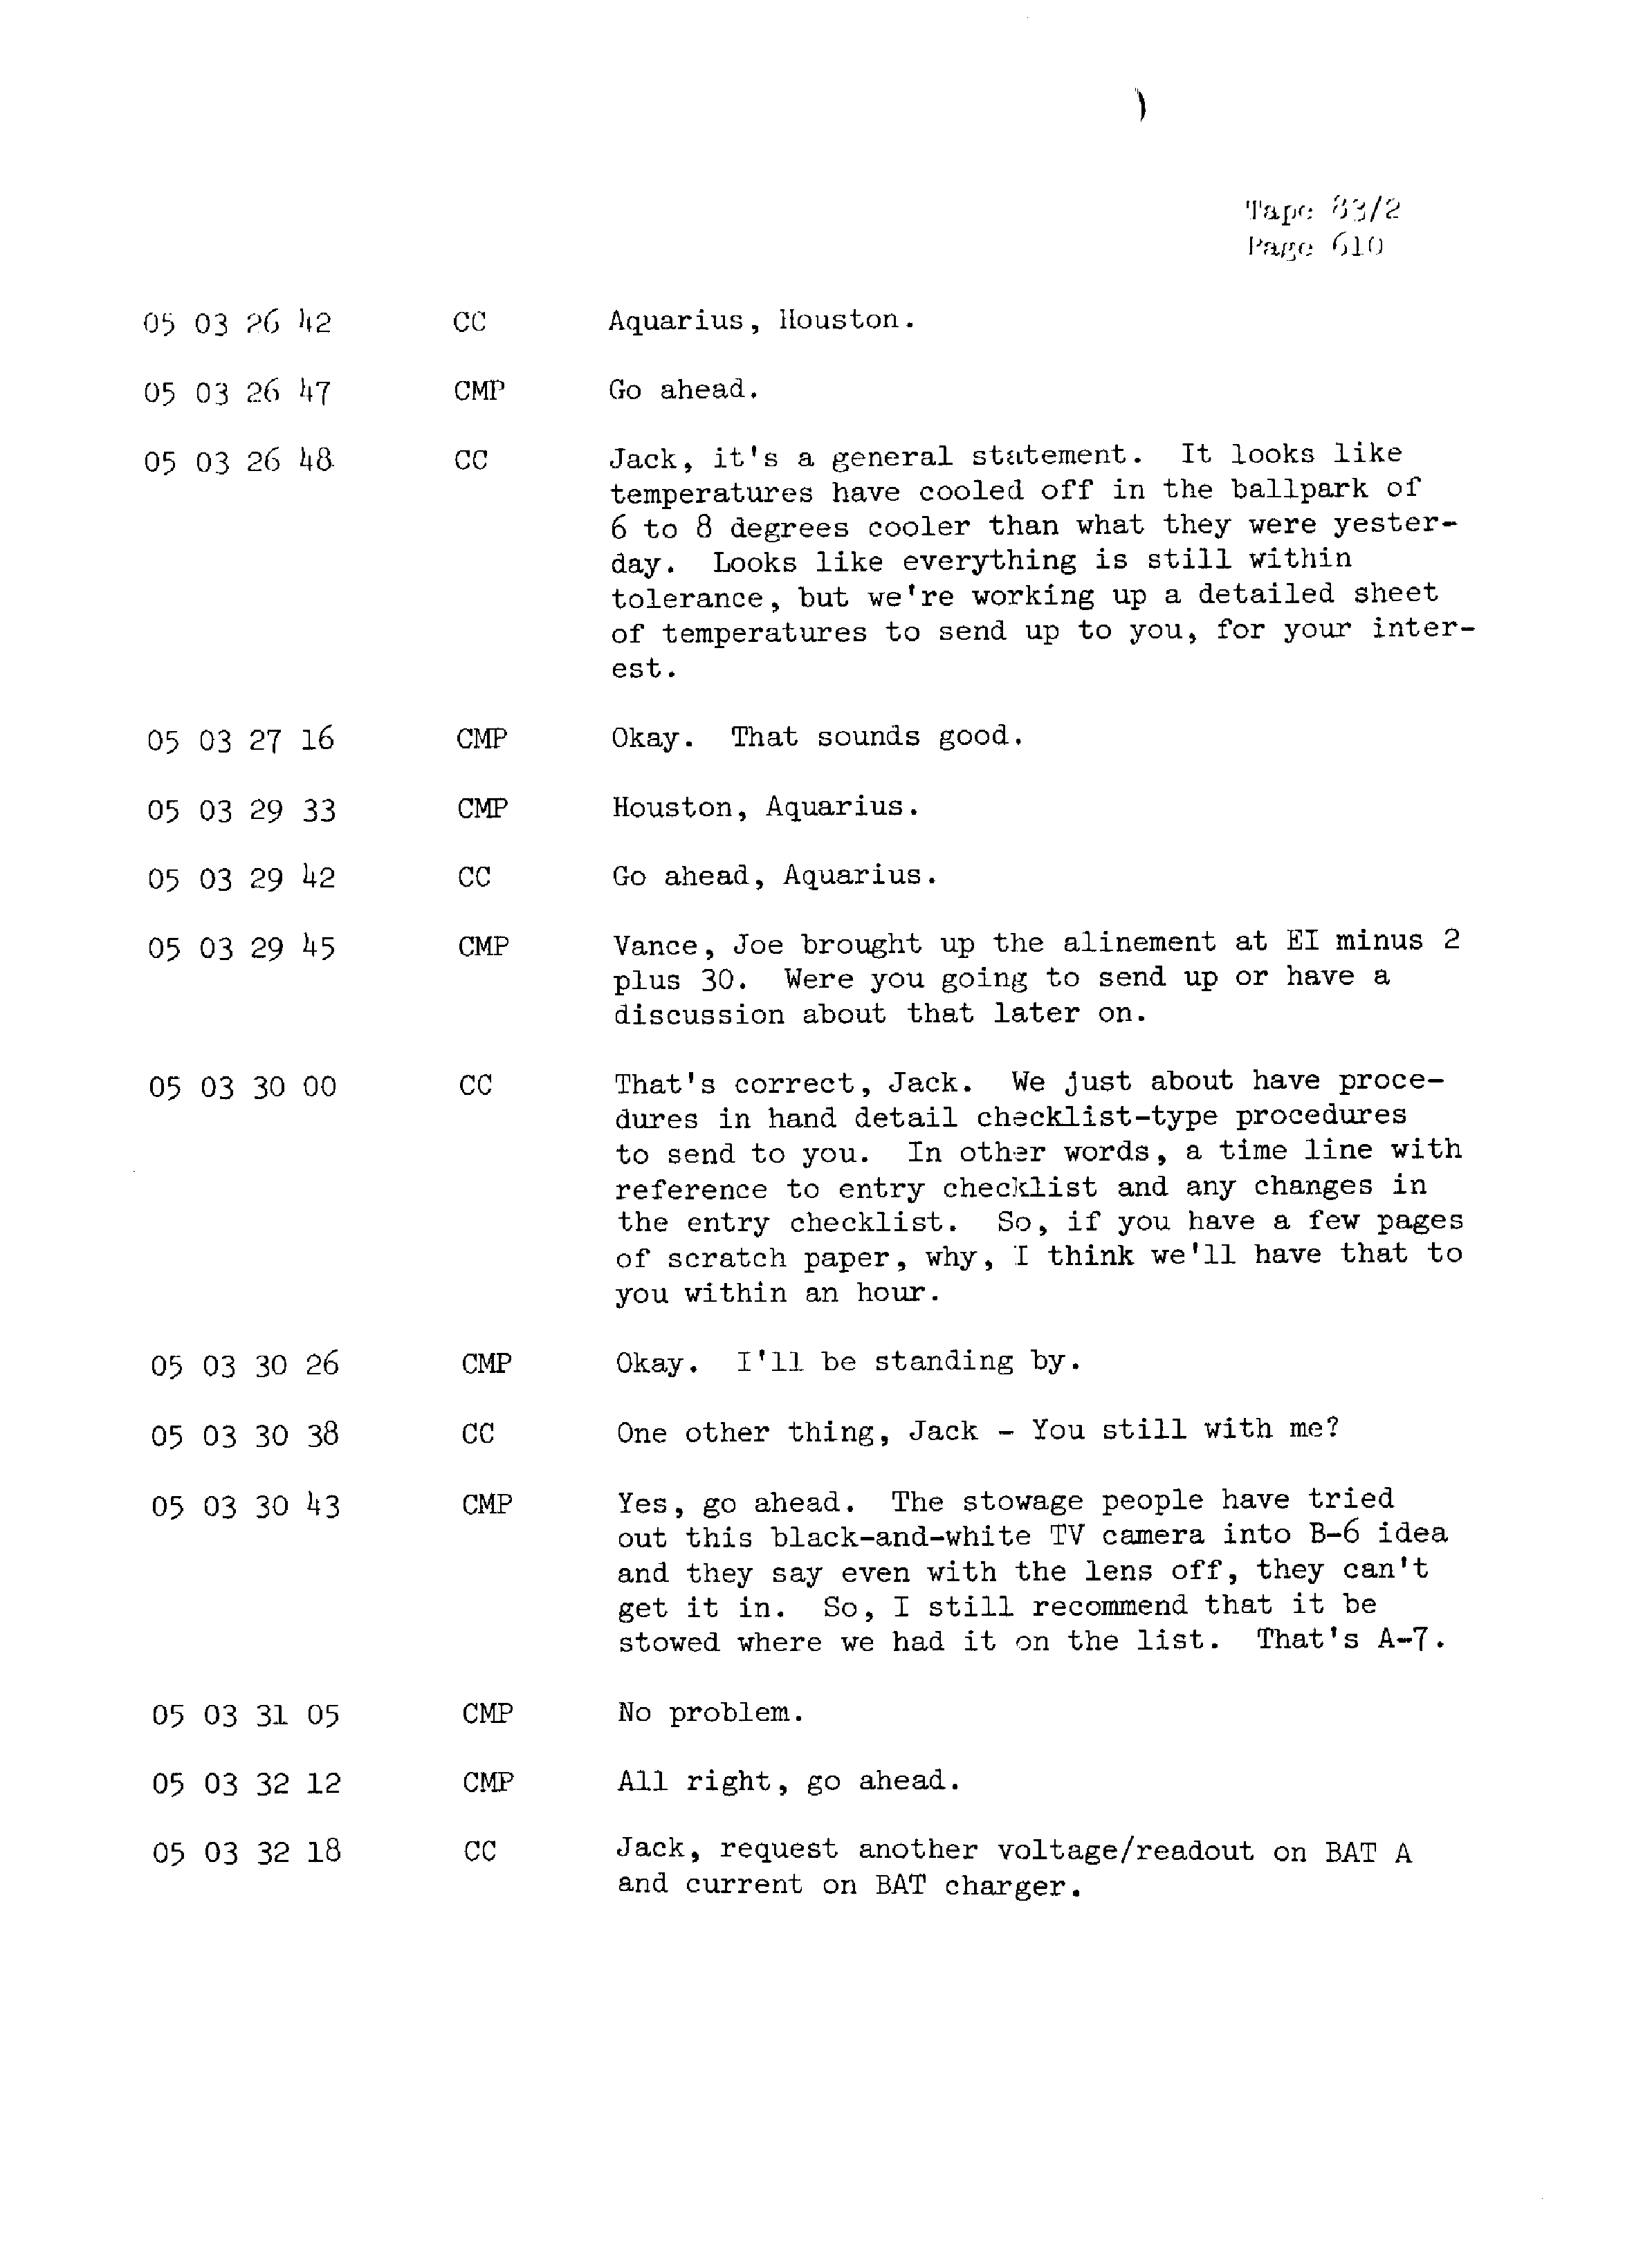 Page 617 of Apollo 13’s original transcript